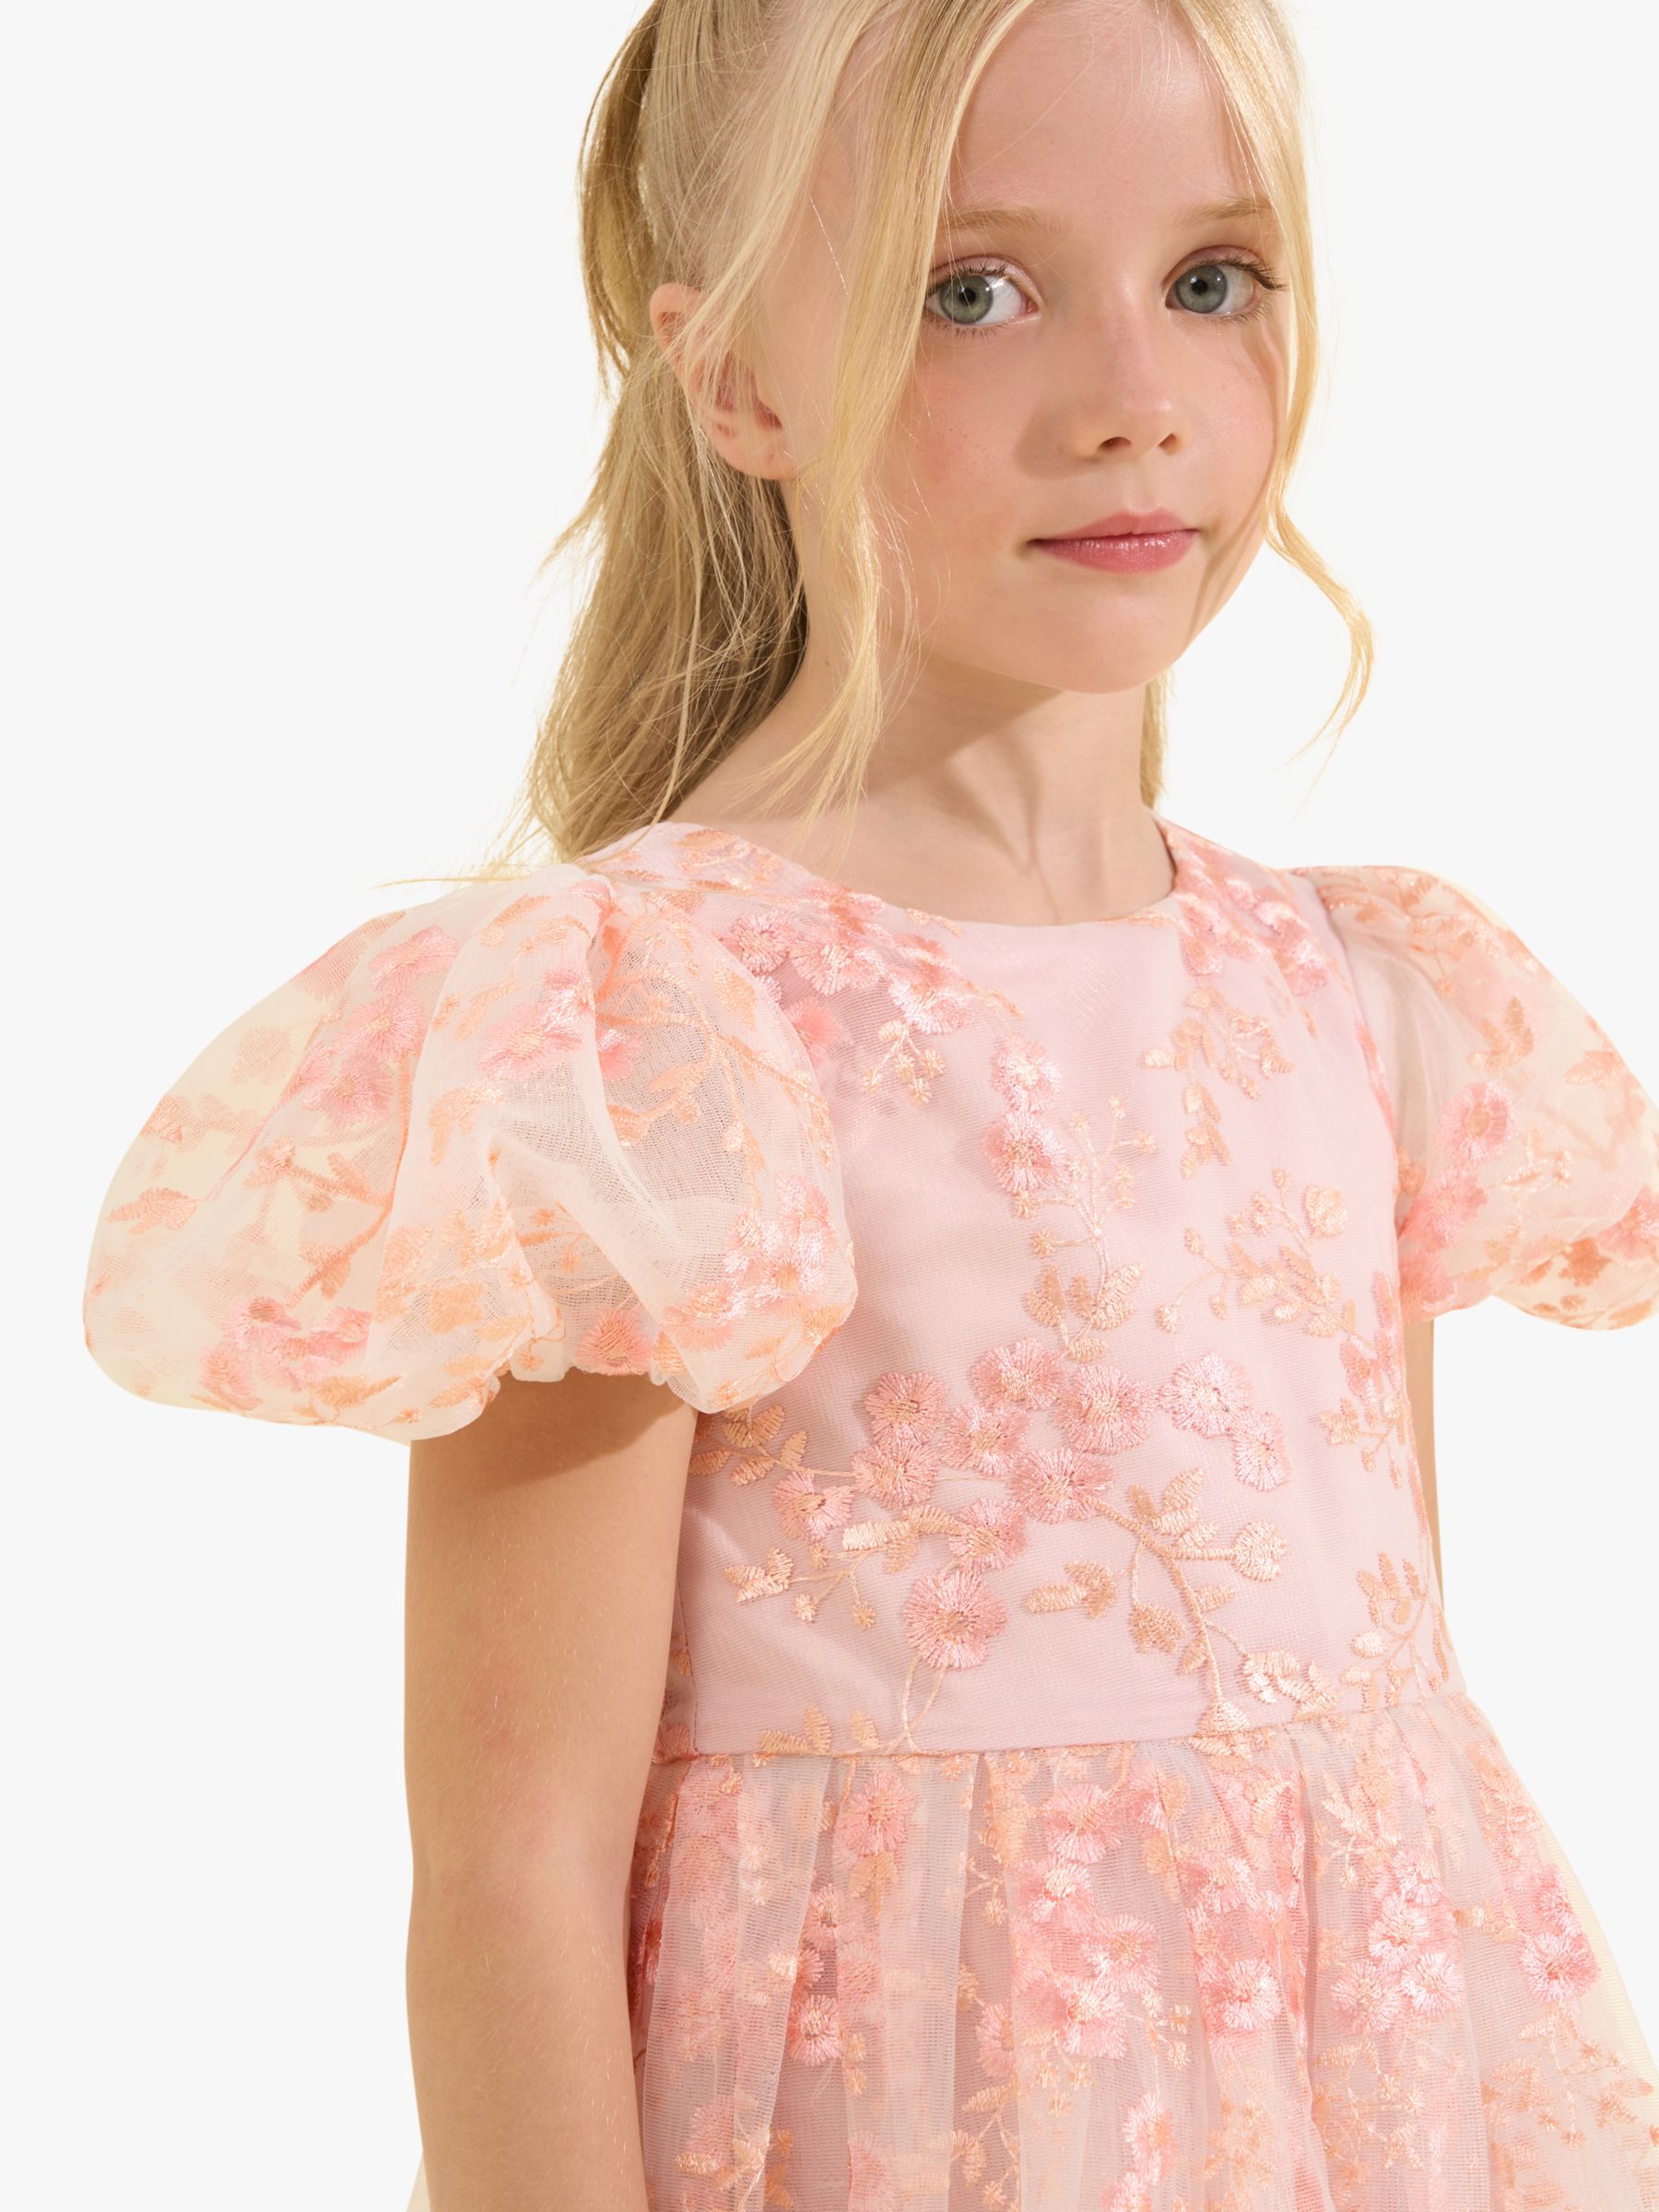 Buy Angel & Rocket Kids' Noemie Floral Embroidered Dress, Pink Online at johnlewis.com